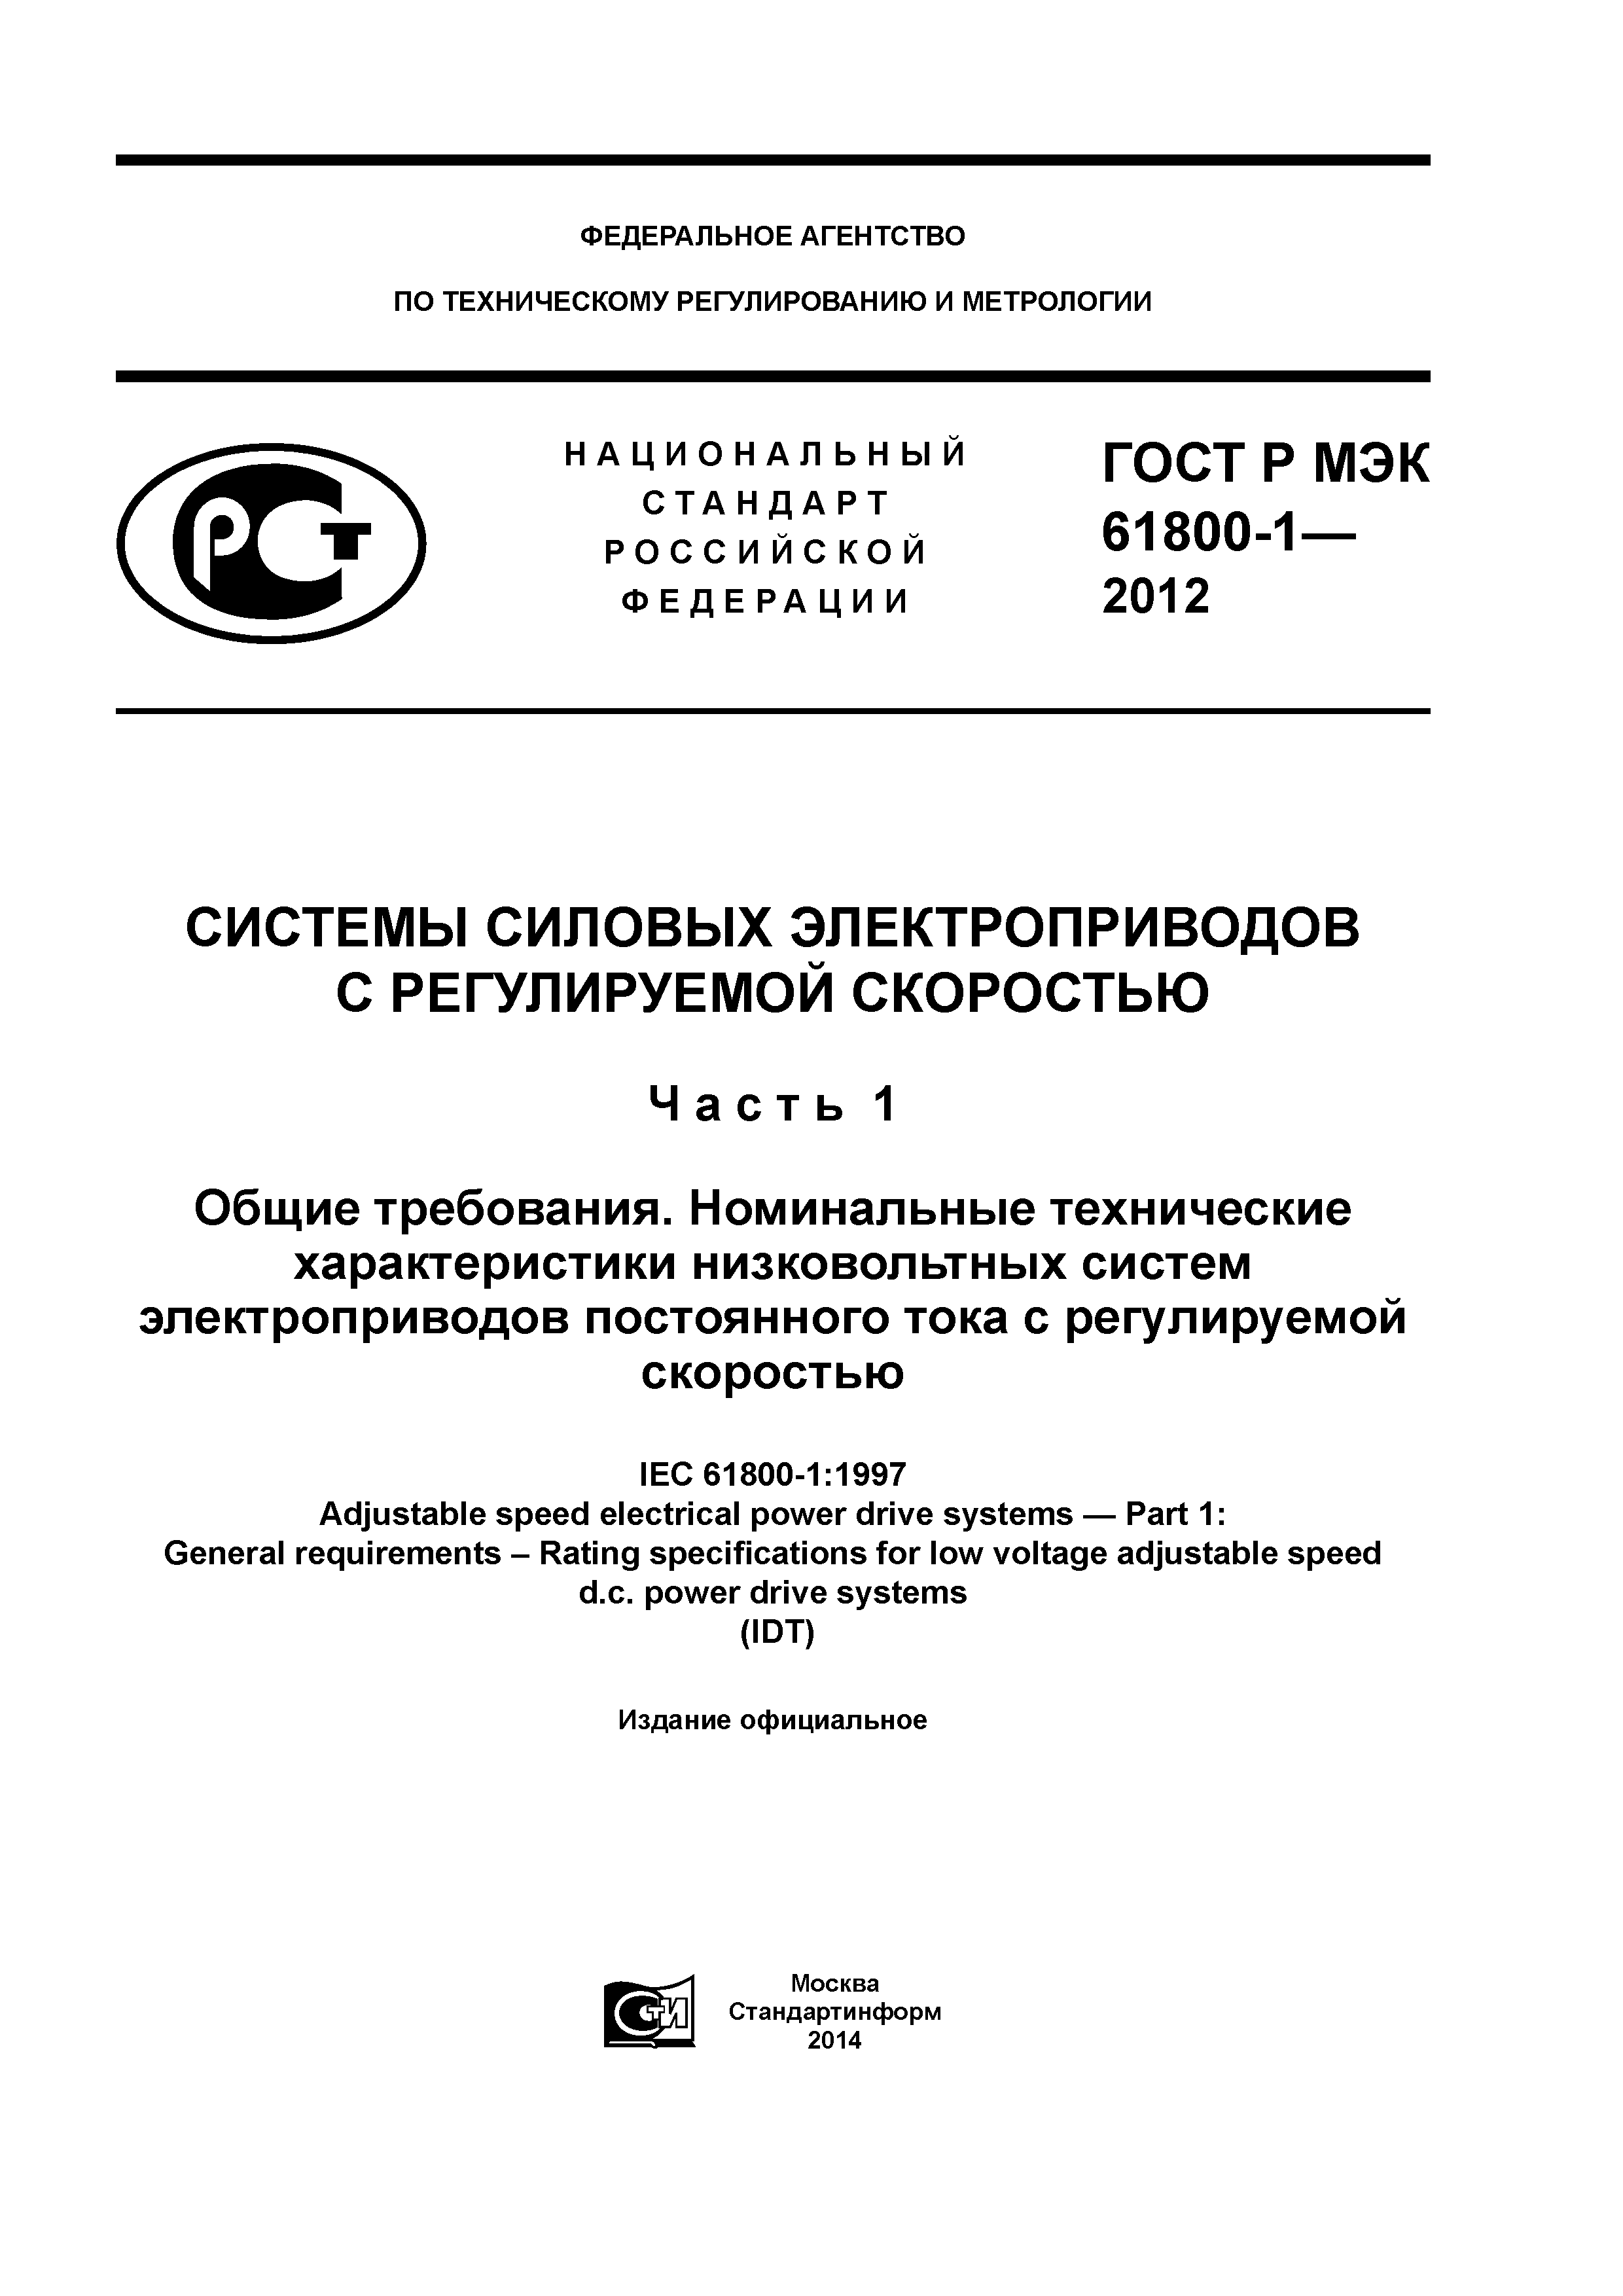 ГОСТ Р МЭК 61800-1-2012